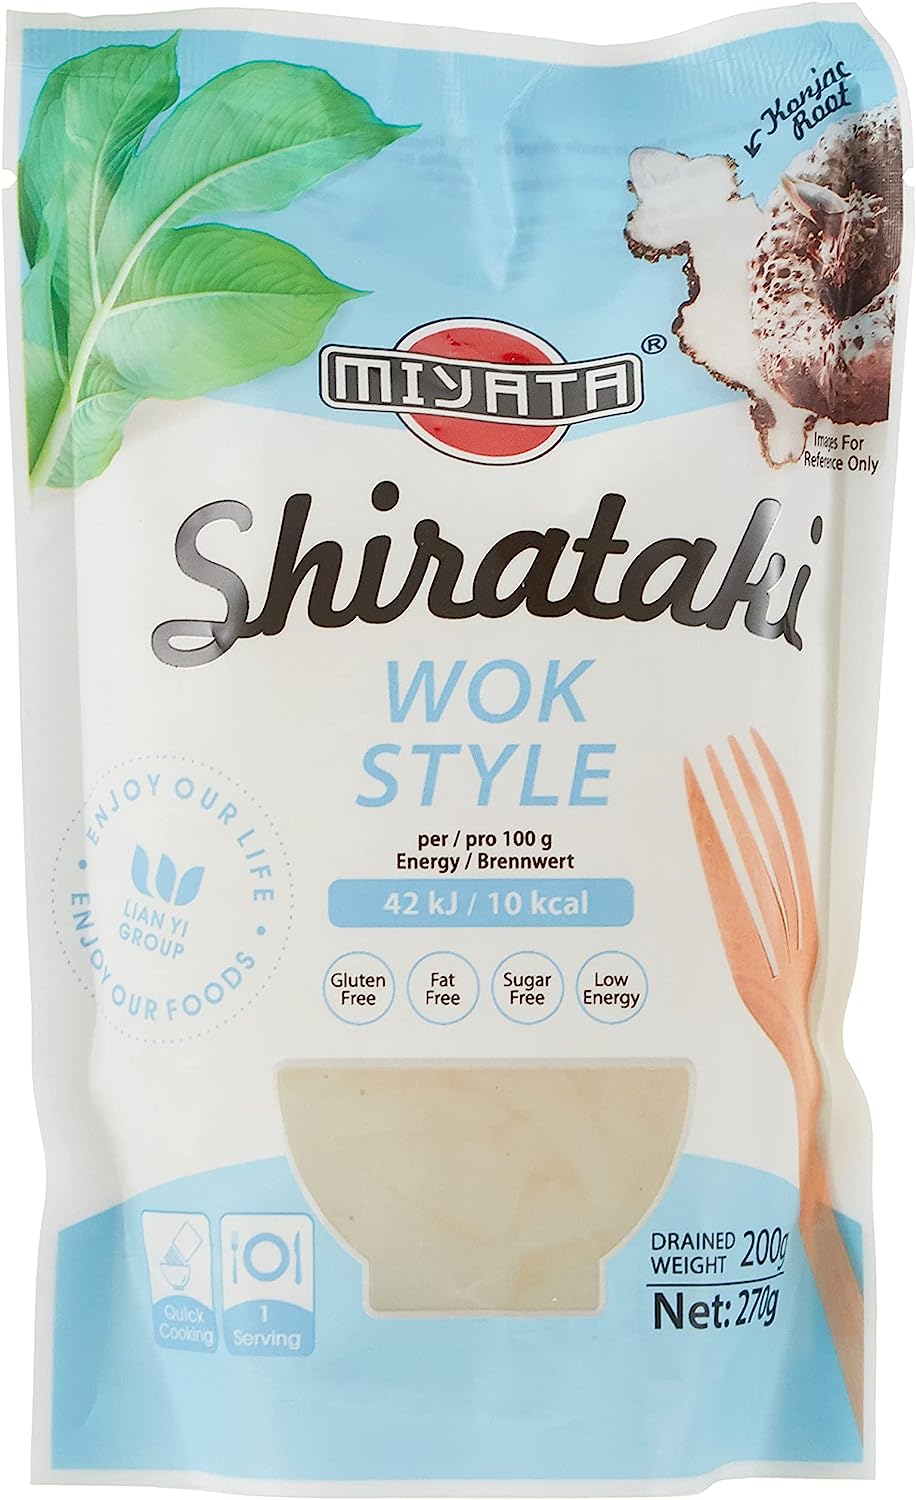 Miyata Shirataki Wok Syle Noodles